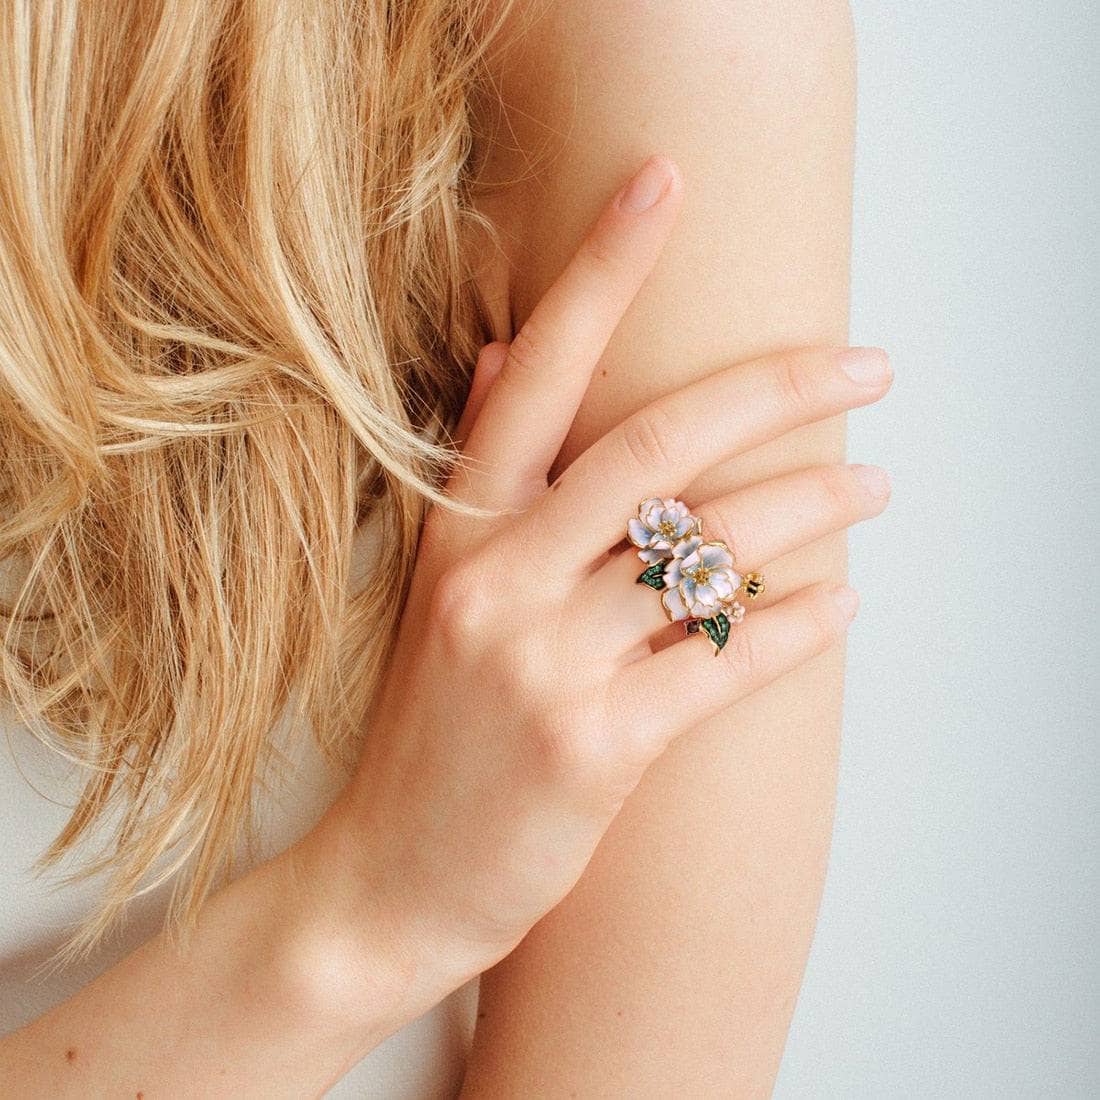 White Enamel Flower Ring with EVN Stone & Spinel-Black Diamonds New York